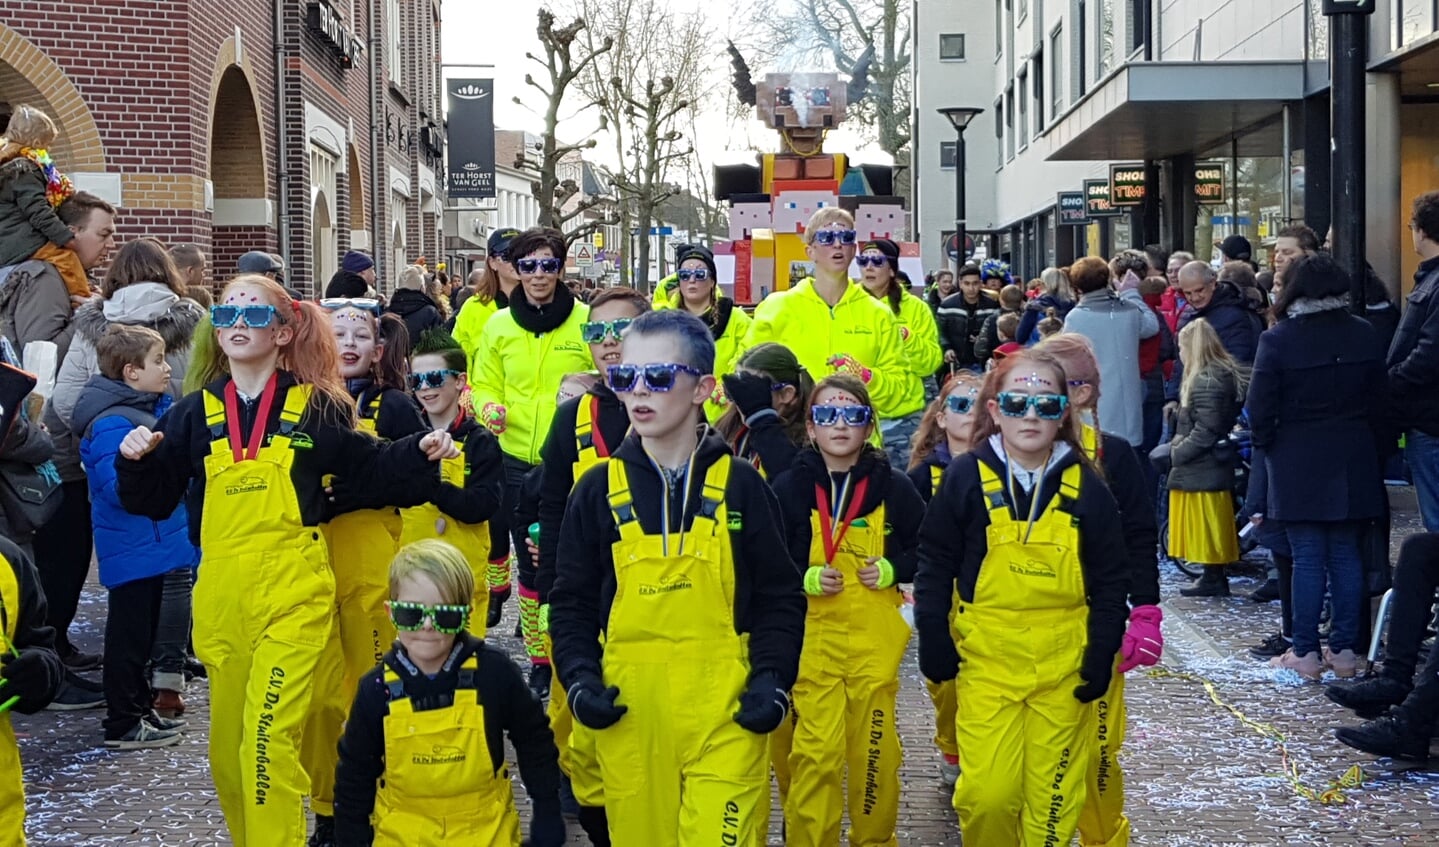 Carnaval in Oss. (Foto: Jolanda Hoogwoud)